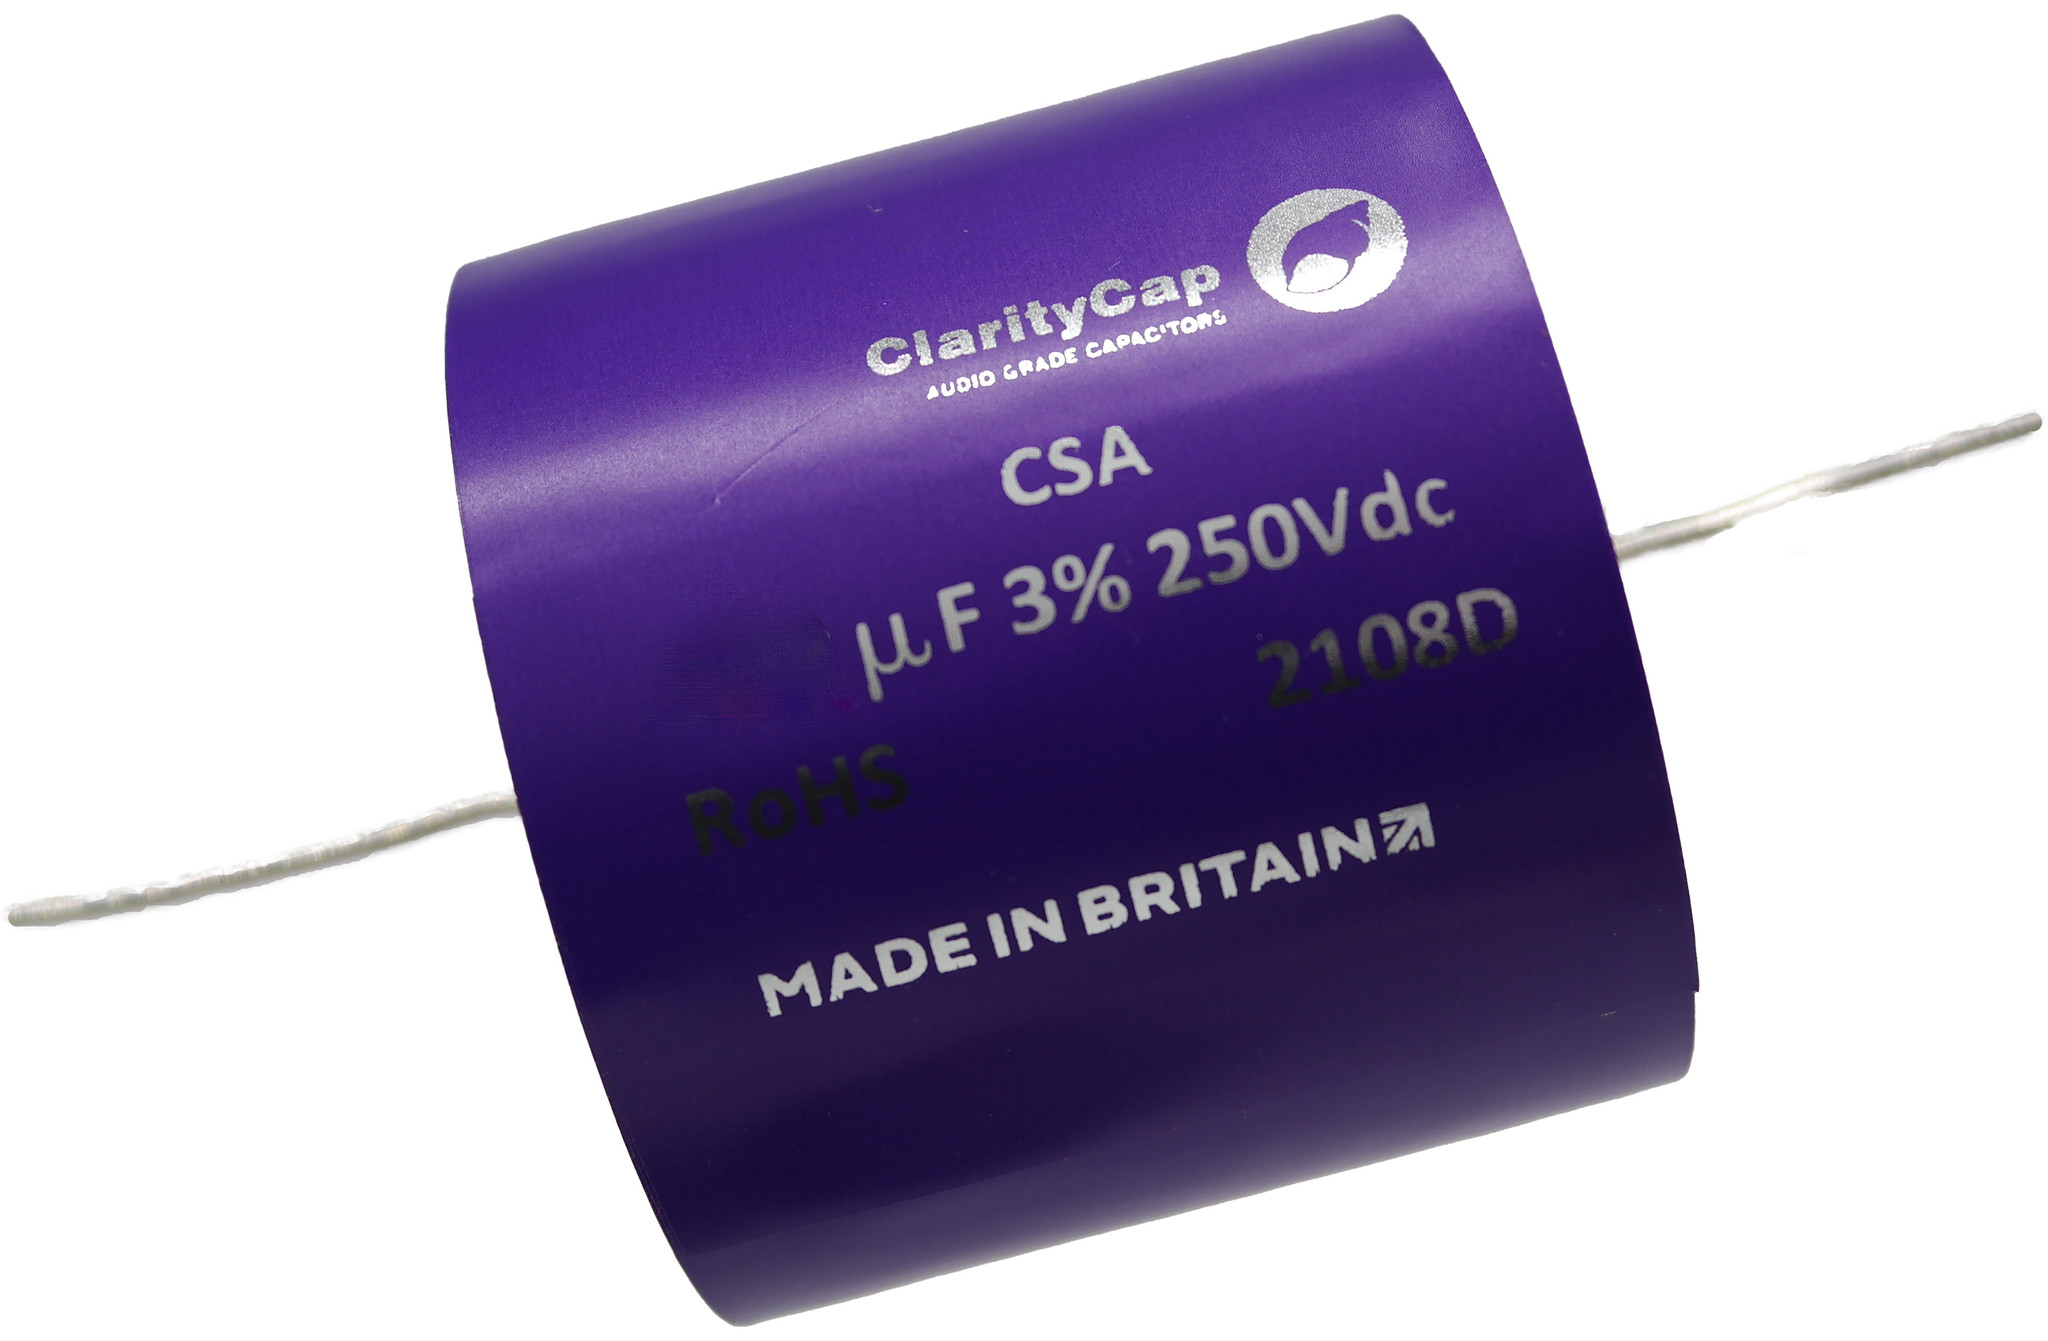 Condensatoare - Condensator film ClarityCap CSA50uH250Vdc| 50 µF | 3% | 250 V, audioclub.ro